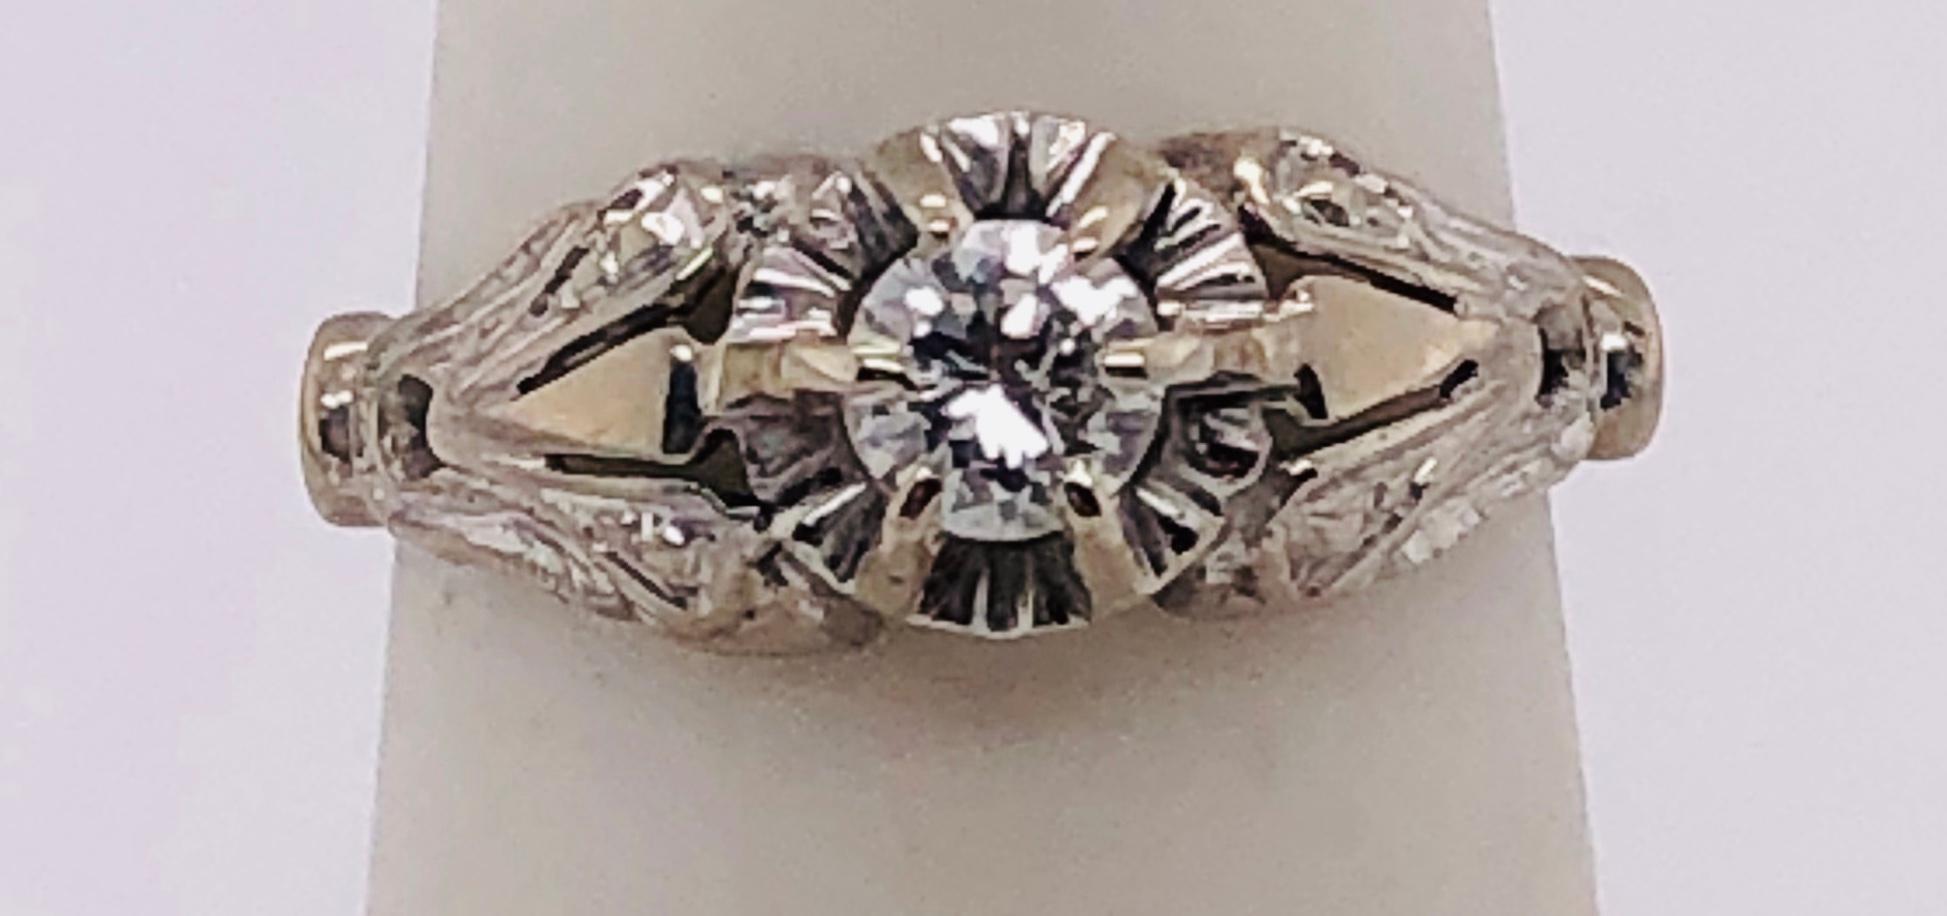 14 Karat White Gold Antique Diamond Engagement Ring  
0.40 Total Diamond Weight